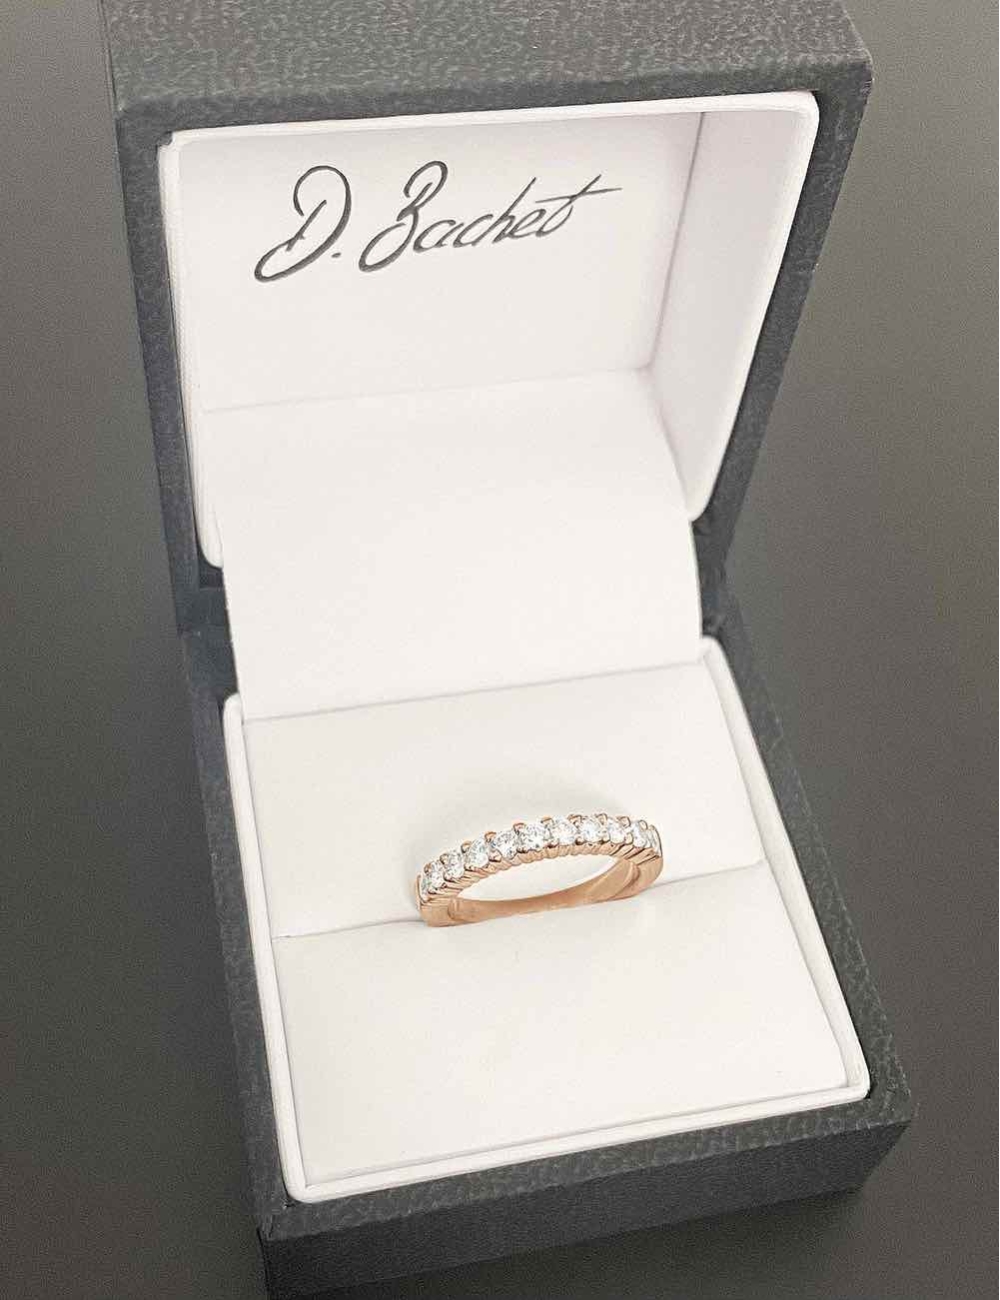 Pink gold prong set diamond wedding ring for women